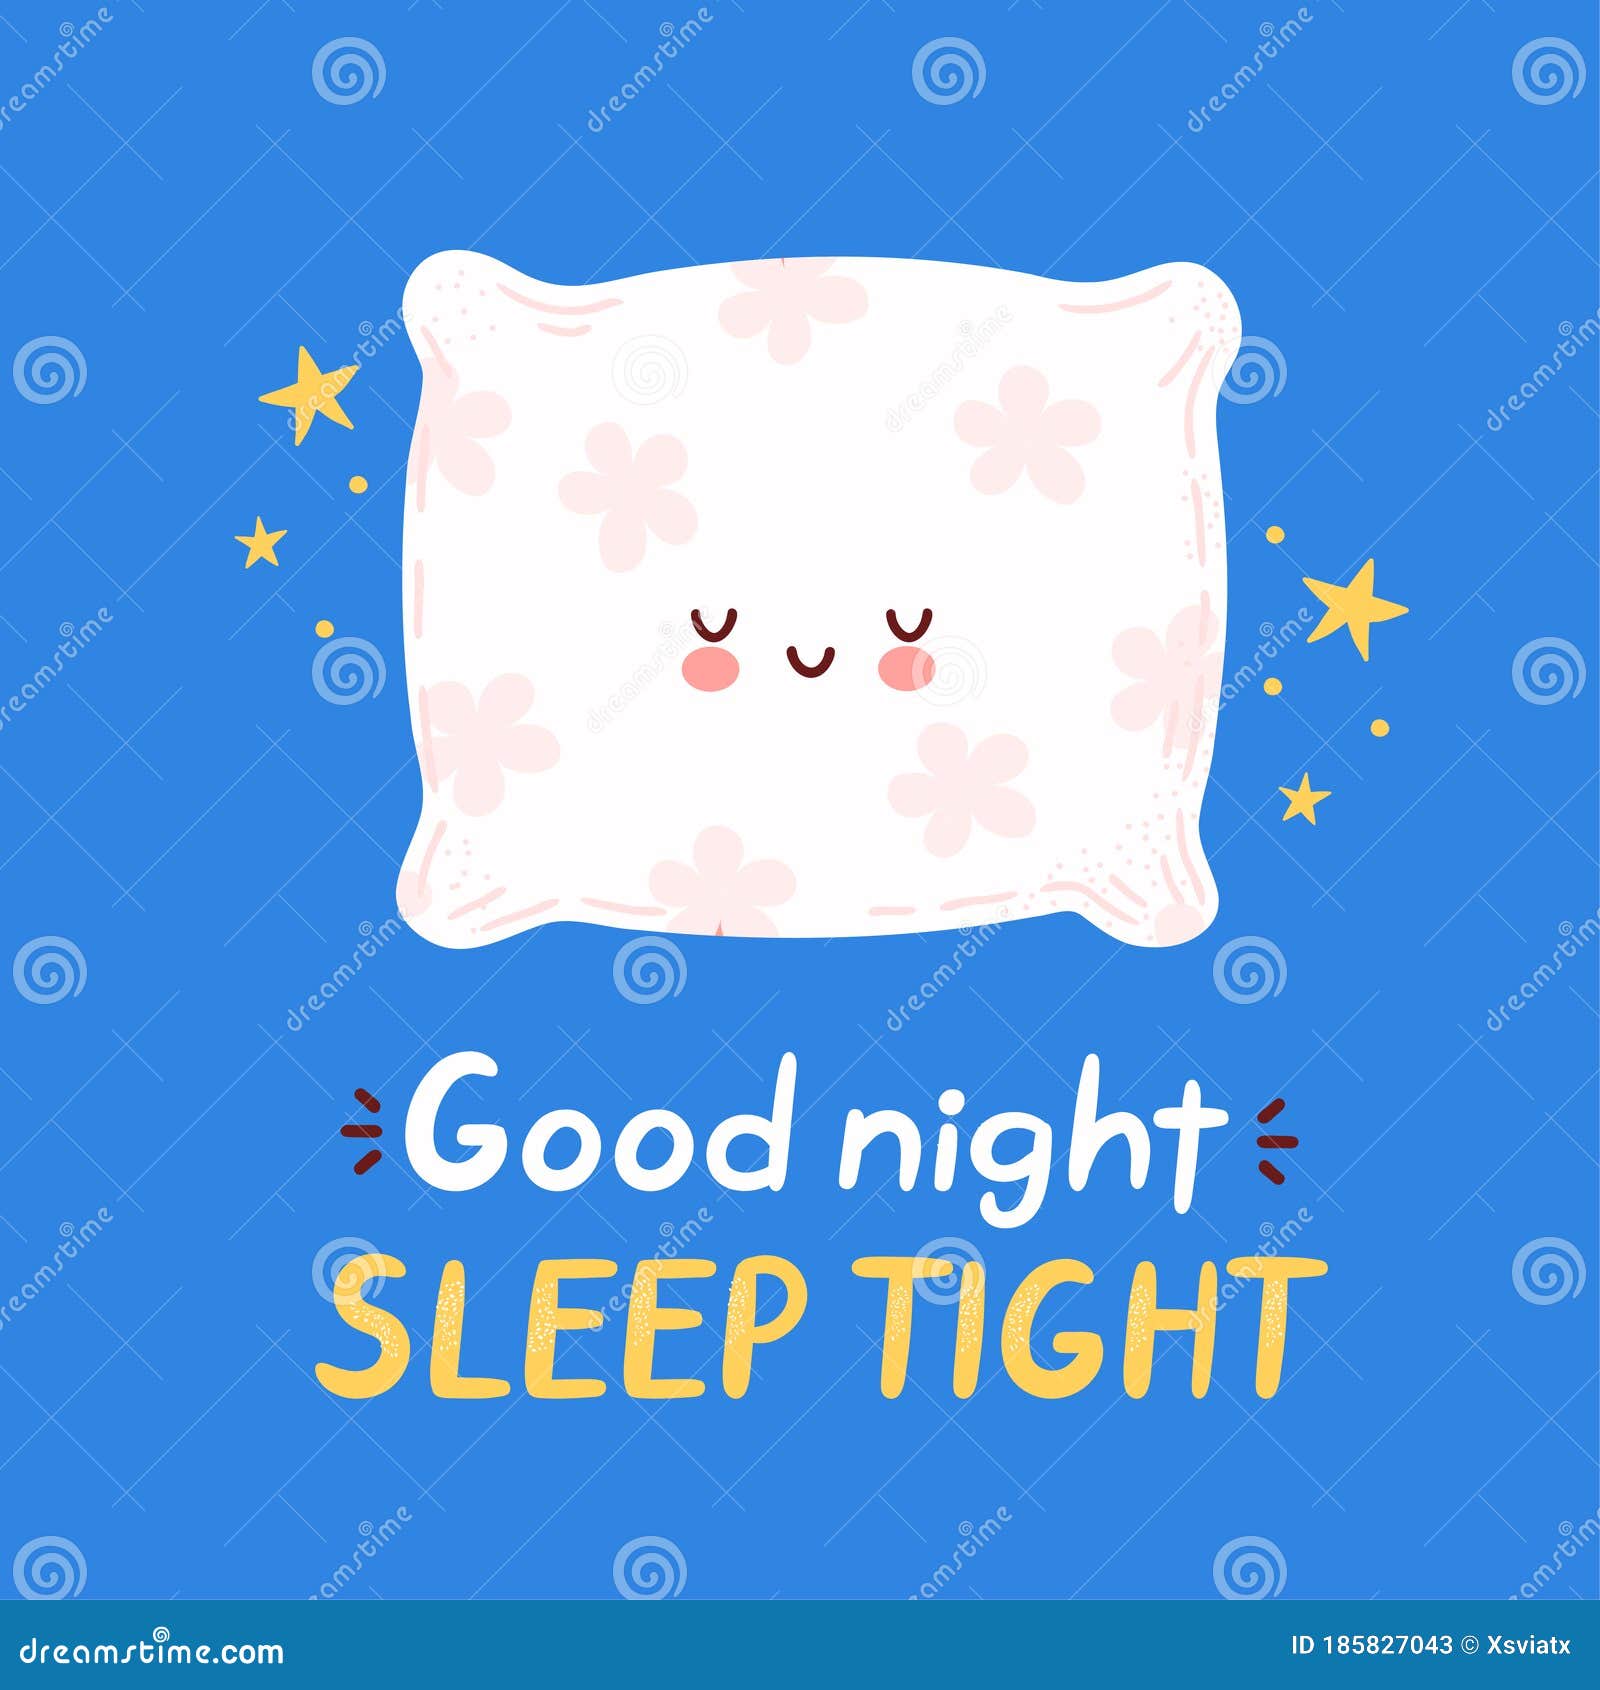 Good Night Sleep Tight Stock Illustrations 64 Good Night Sleep Tight Stock Illustrations Vectors Clipart Dreamstime